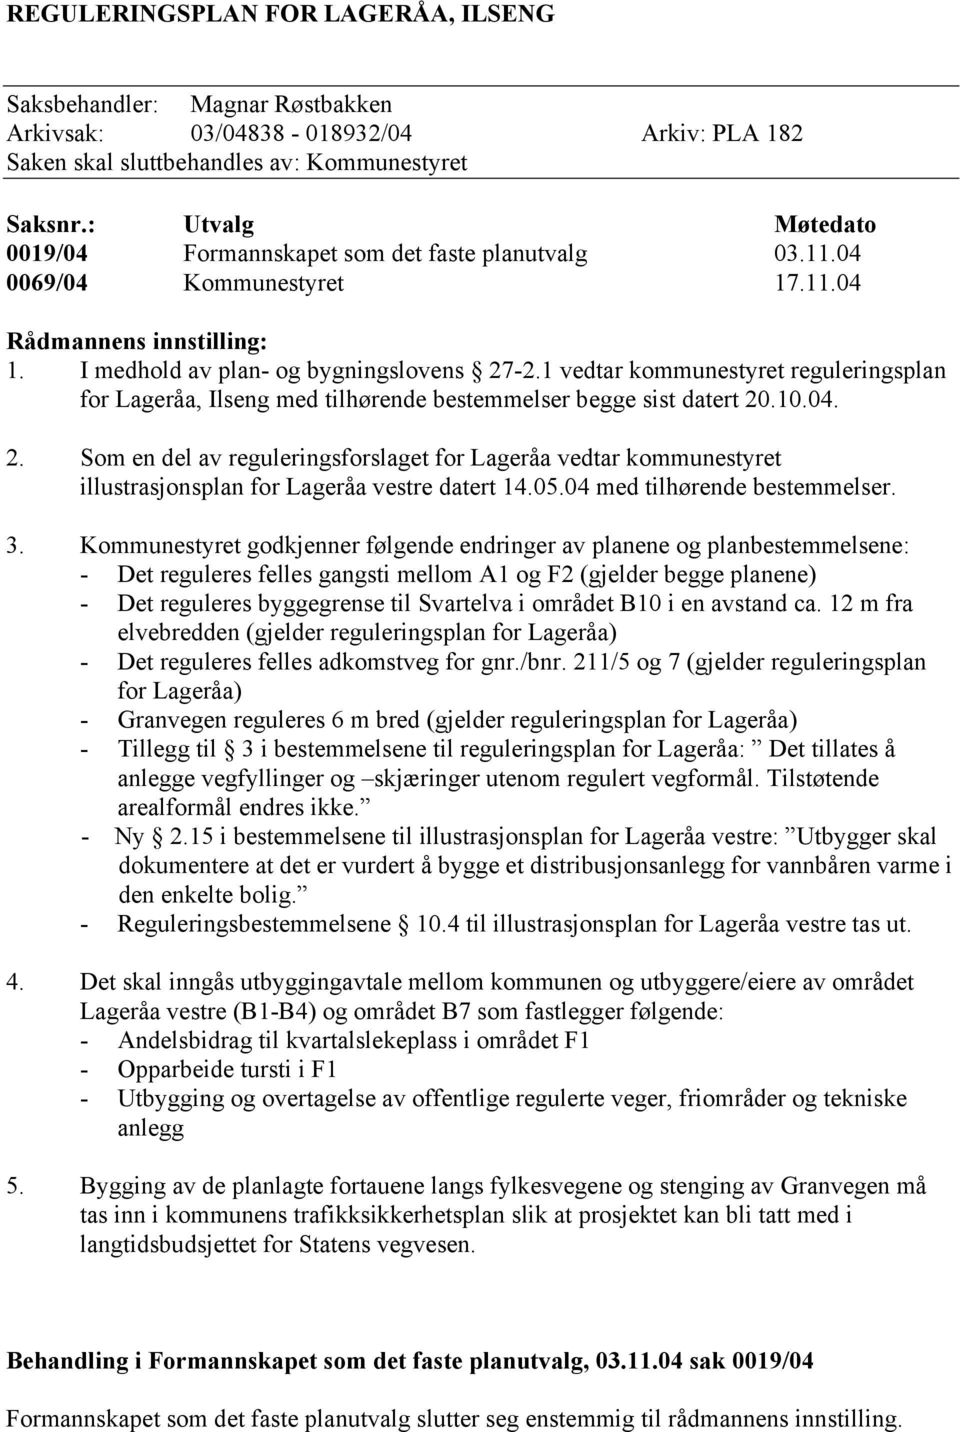 1 vedtar kommunestyret reguleringsplan for Lageråa, Ilseng med tilhørende bestemmelser begge sist datert 20